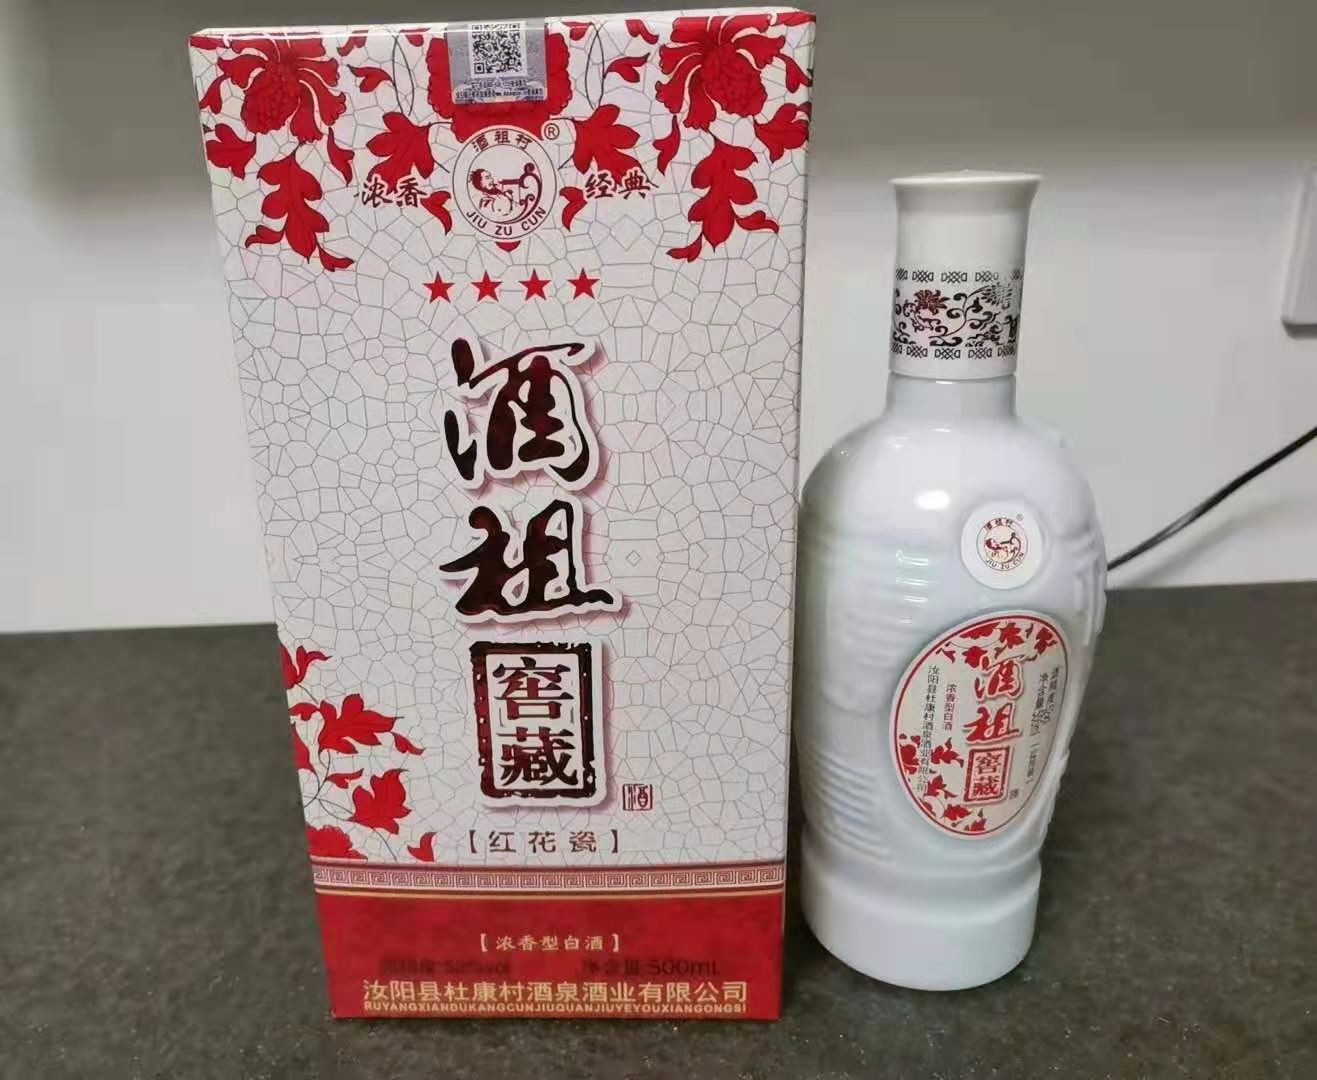 产品详情产品名称:酒祖窖藏红花瓷酒 香型:浓香型原料:水,高粱